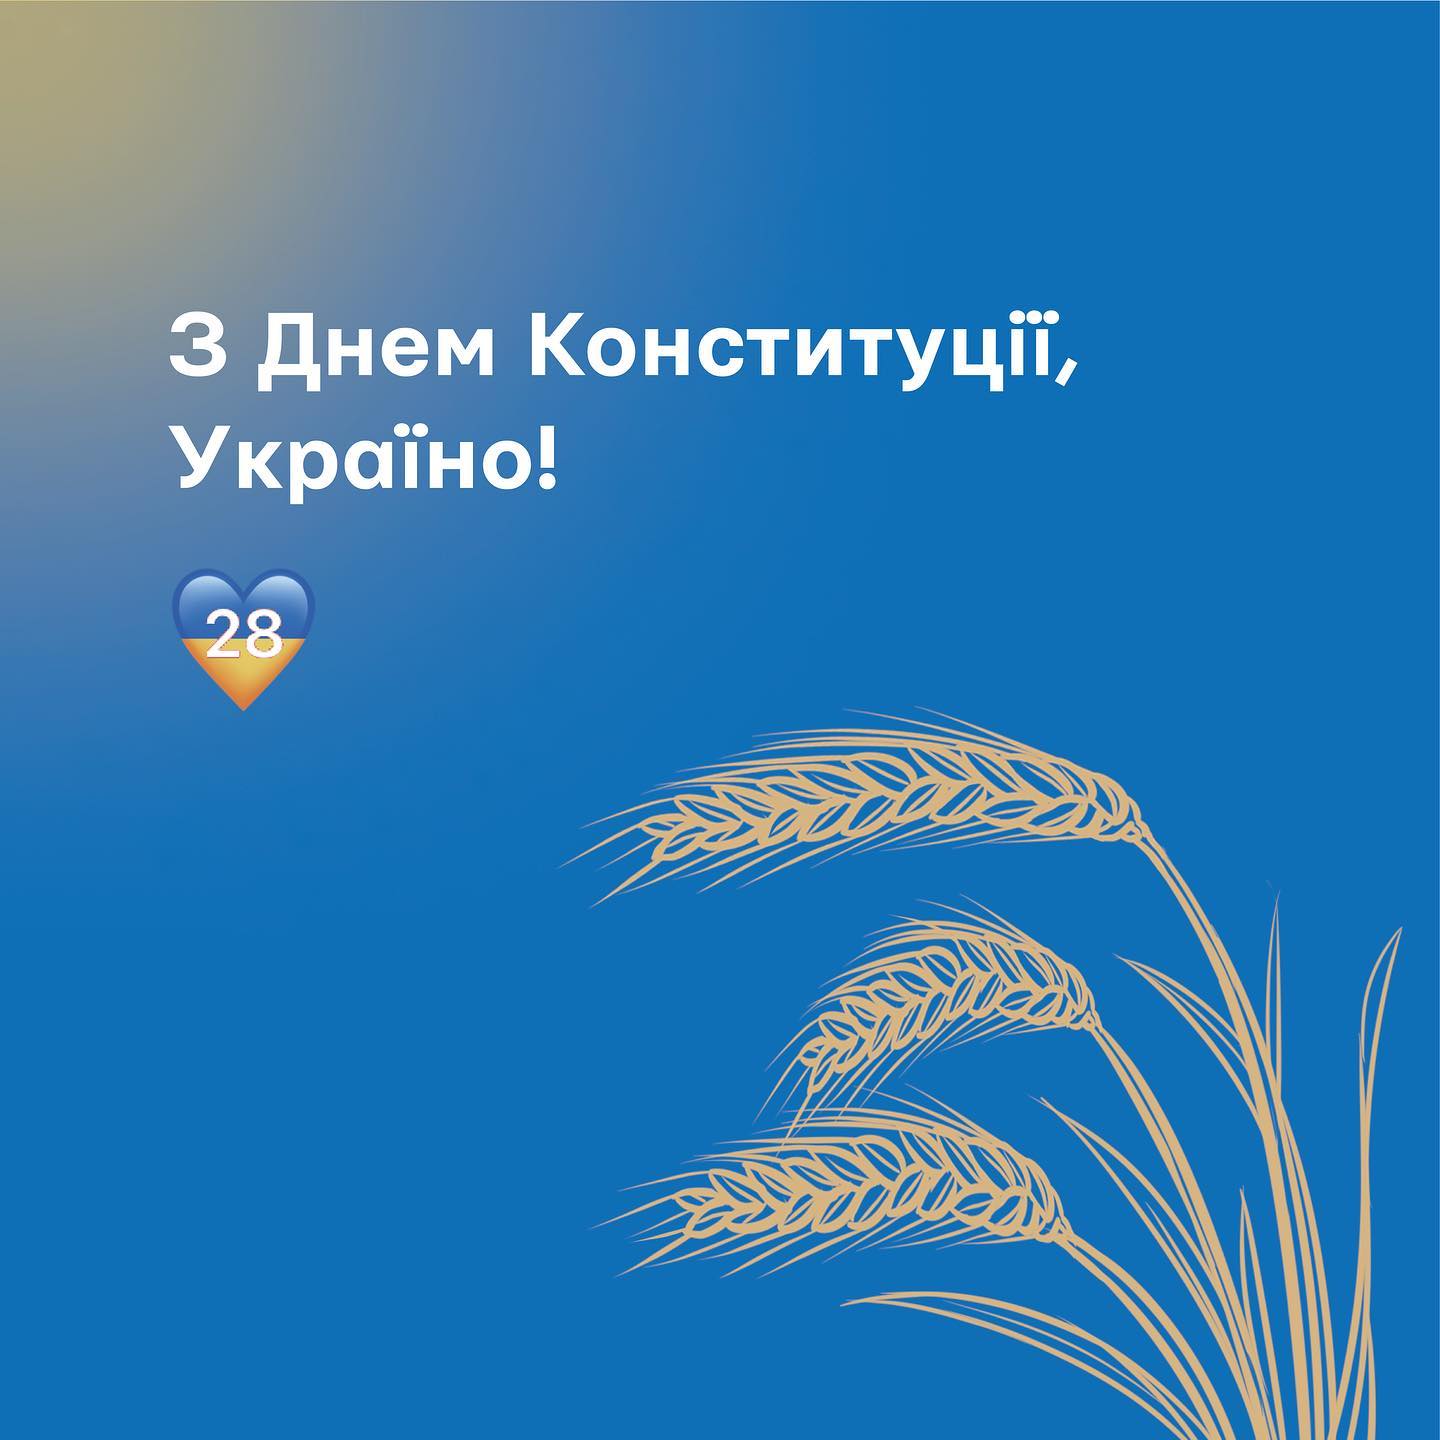 З Днем Конституції, Україно!
Живімо вільно, сміливо